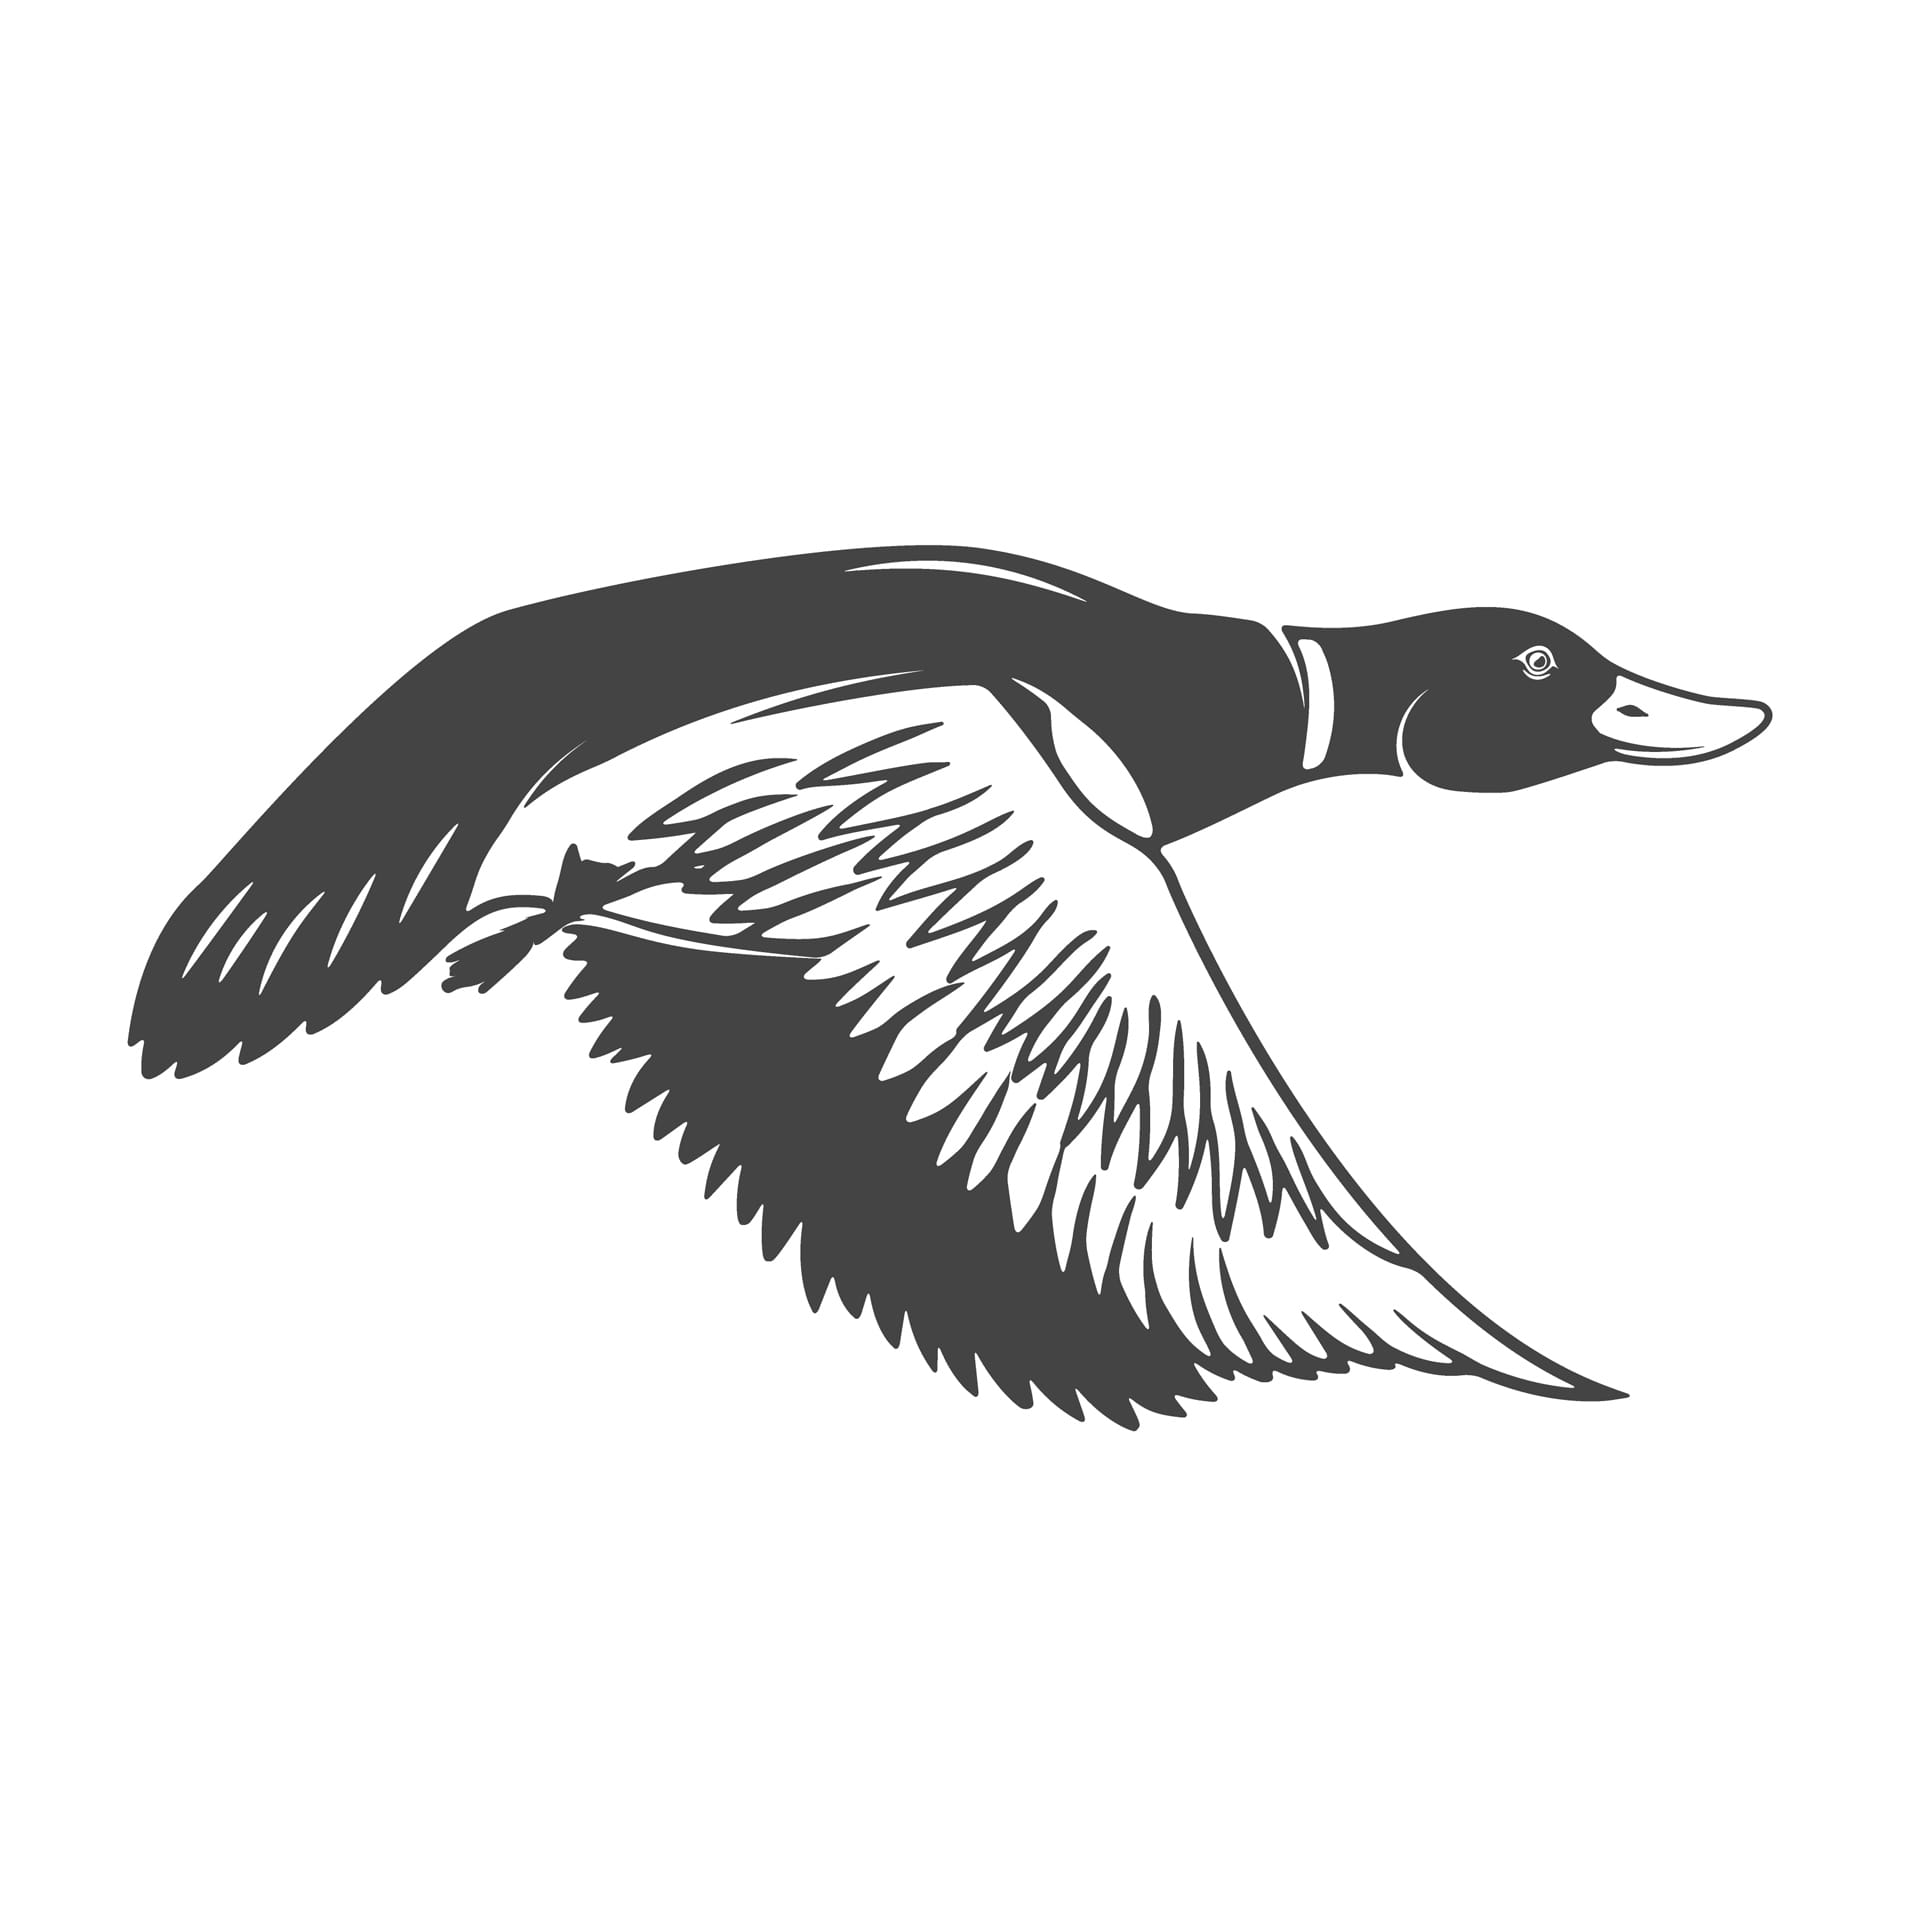 Wild ducks icons elements logo label emblem picture